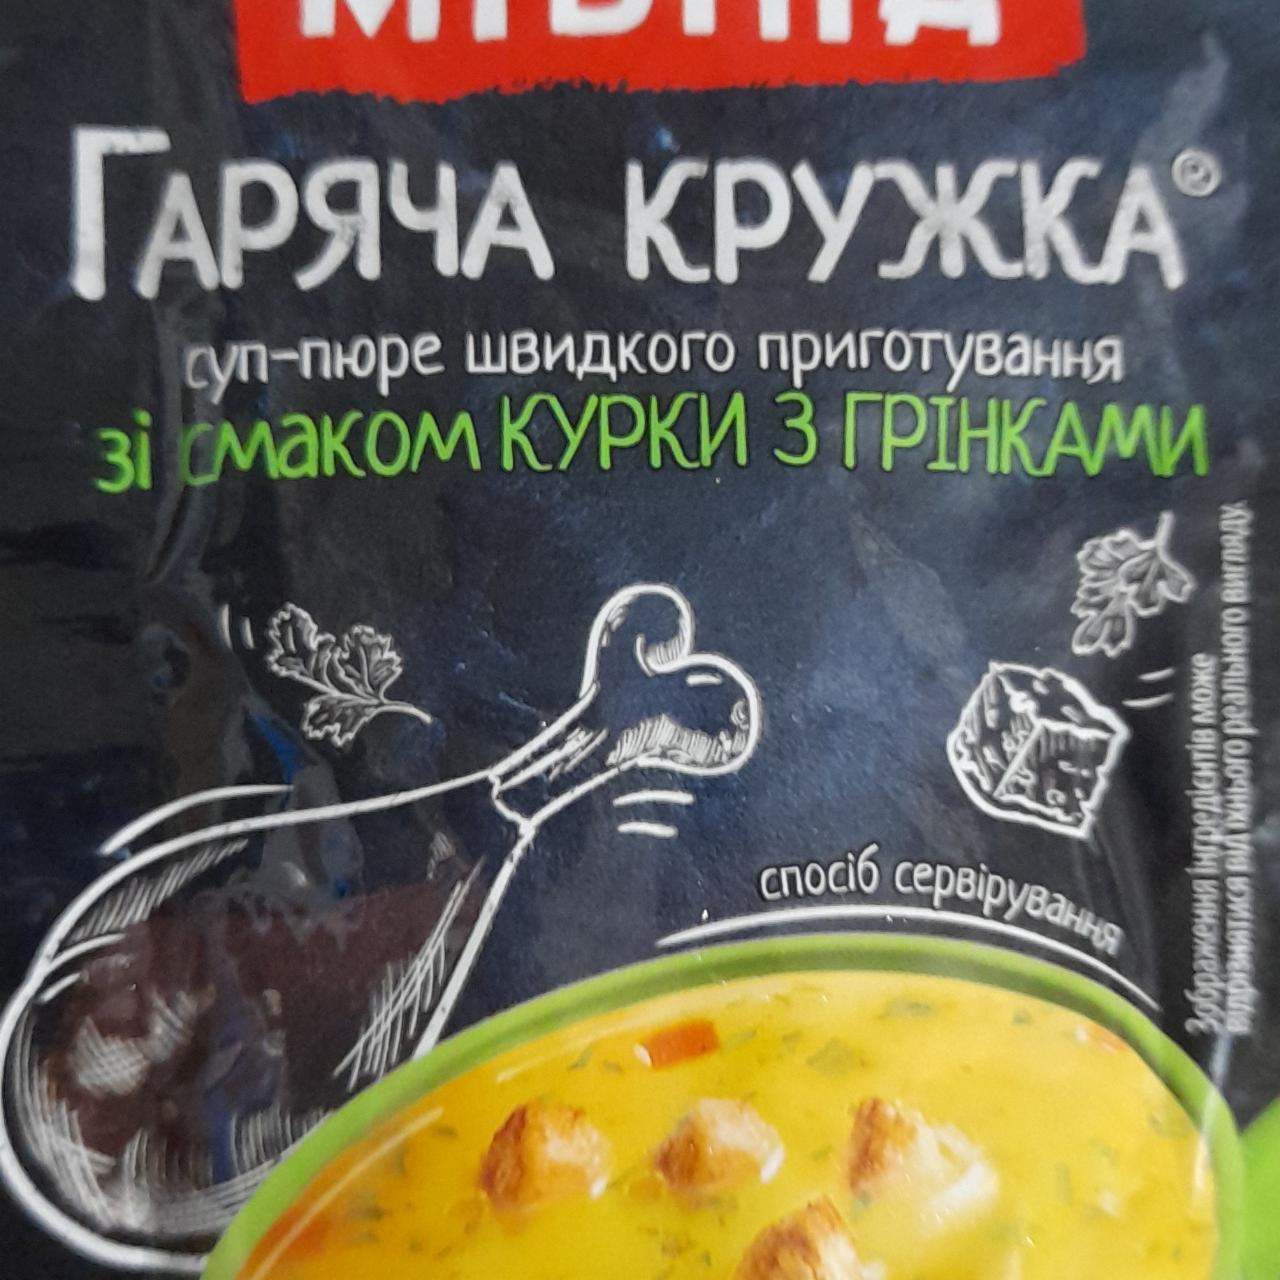 Фото - суп в кружке быстрого приготовления со вкусом курицы Мівіна